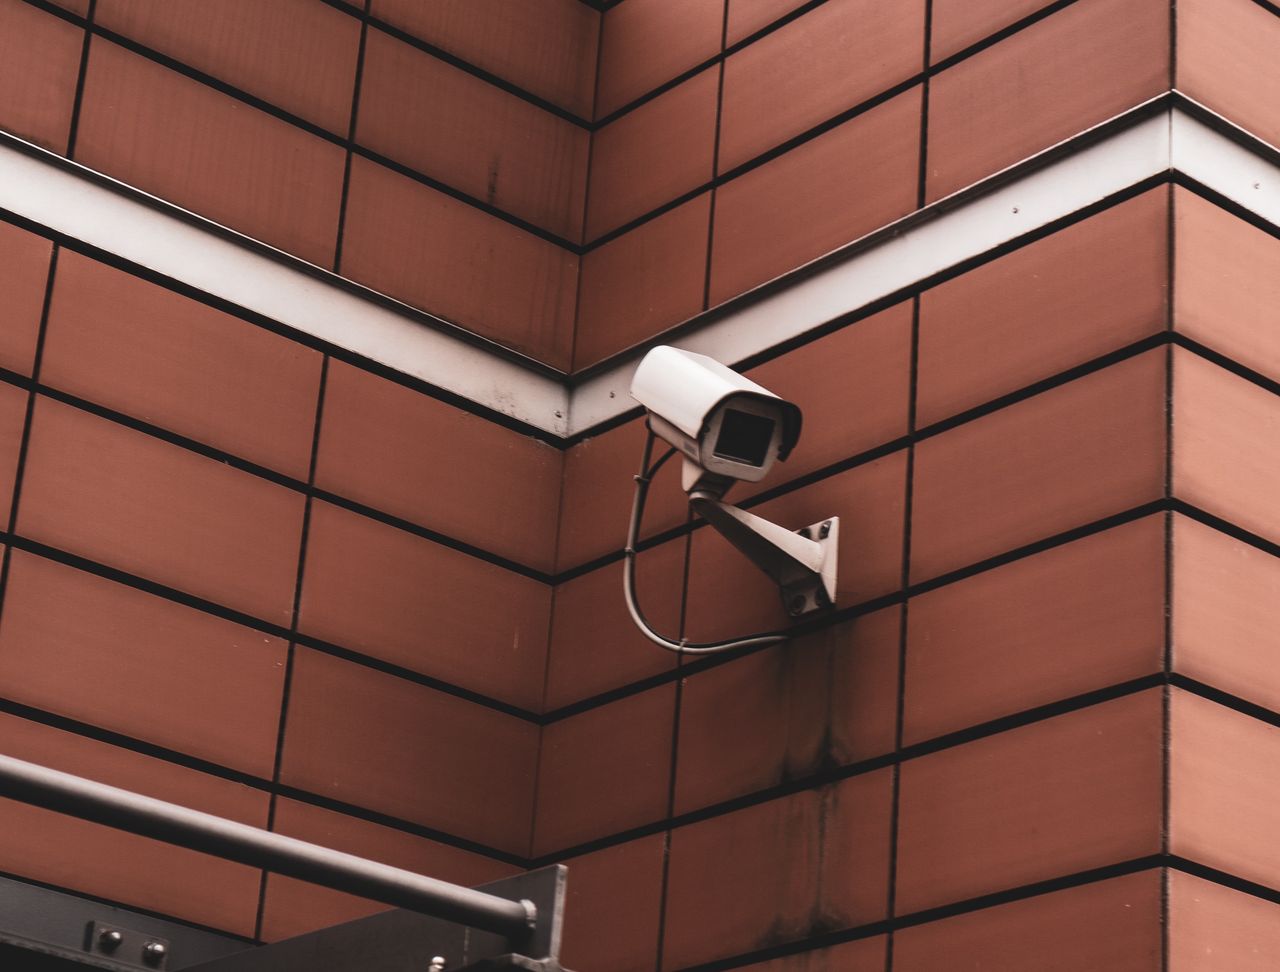 Włamania na routery i kamery. Chodzi o 65 producentów sprzętu - Kamera CCTV, monitoring